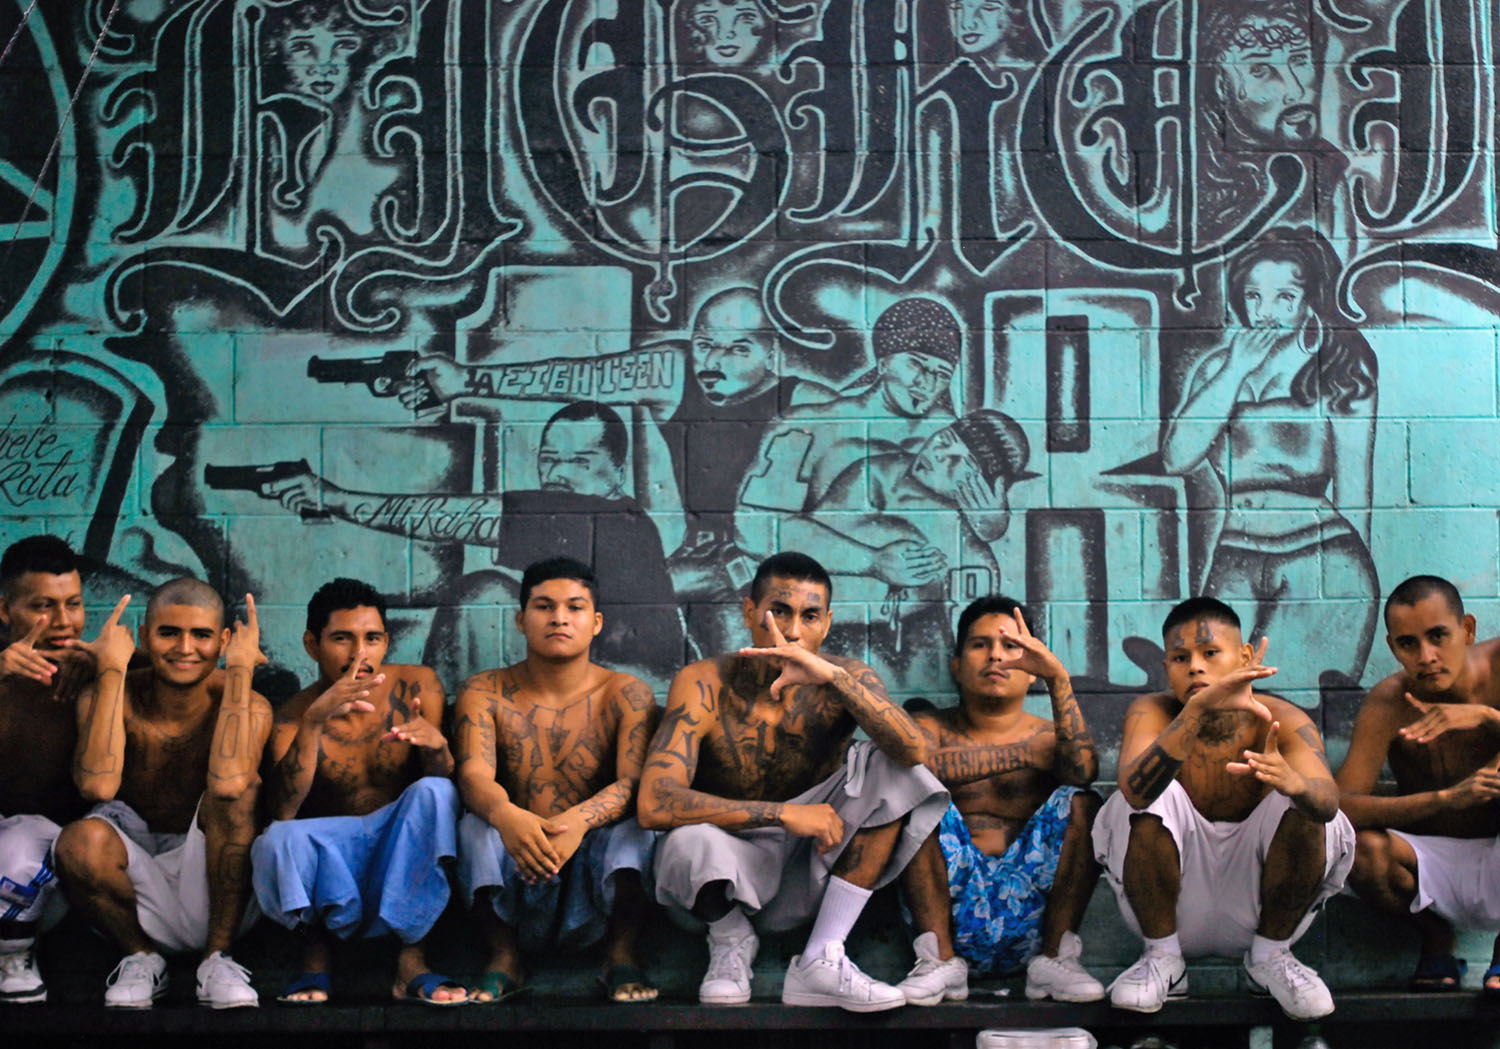 Bandatagok egy börtönfotón San Salvador külvárosában